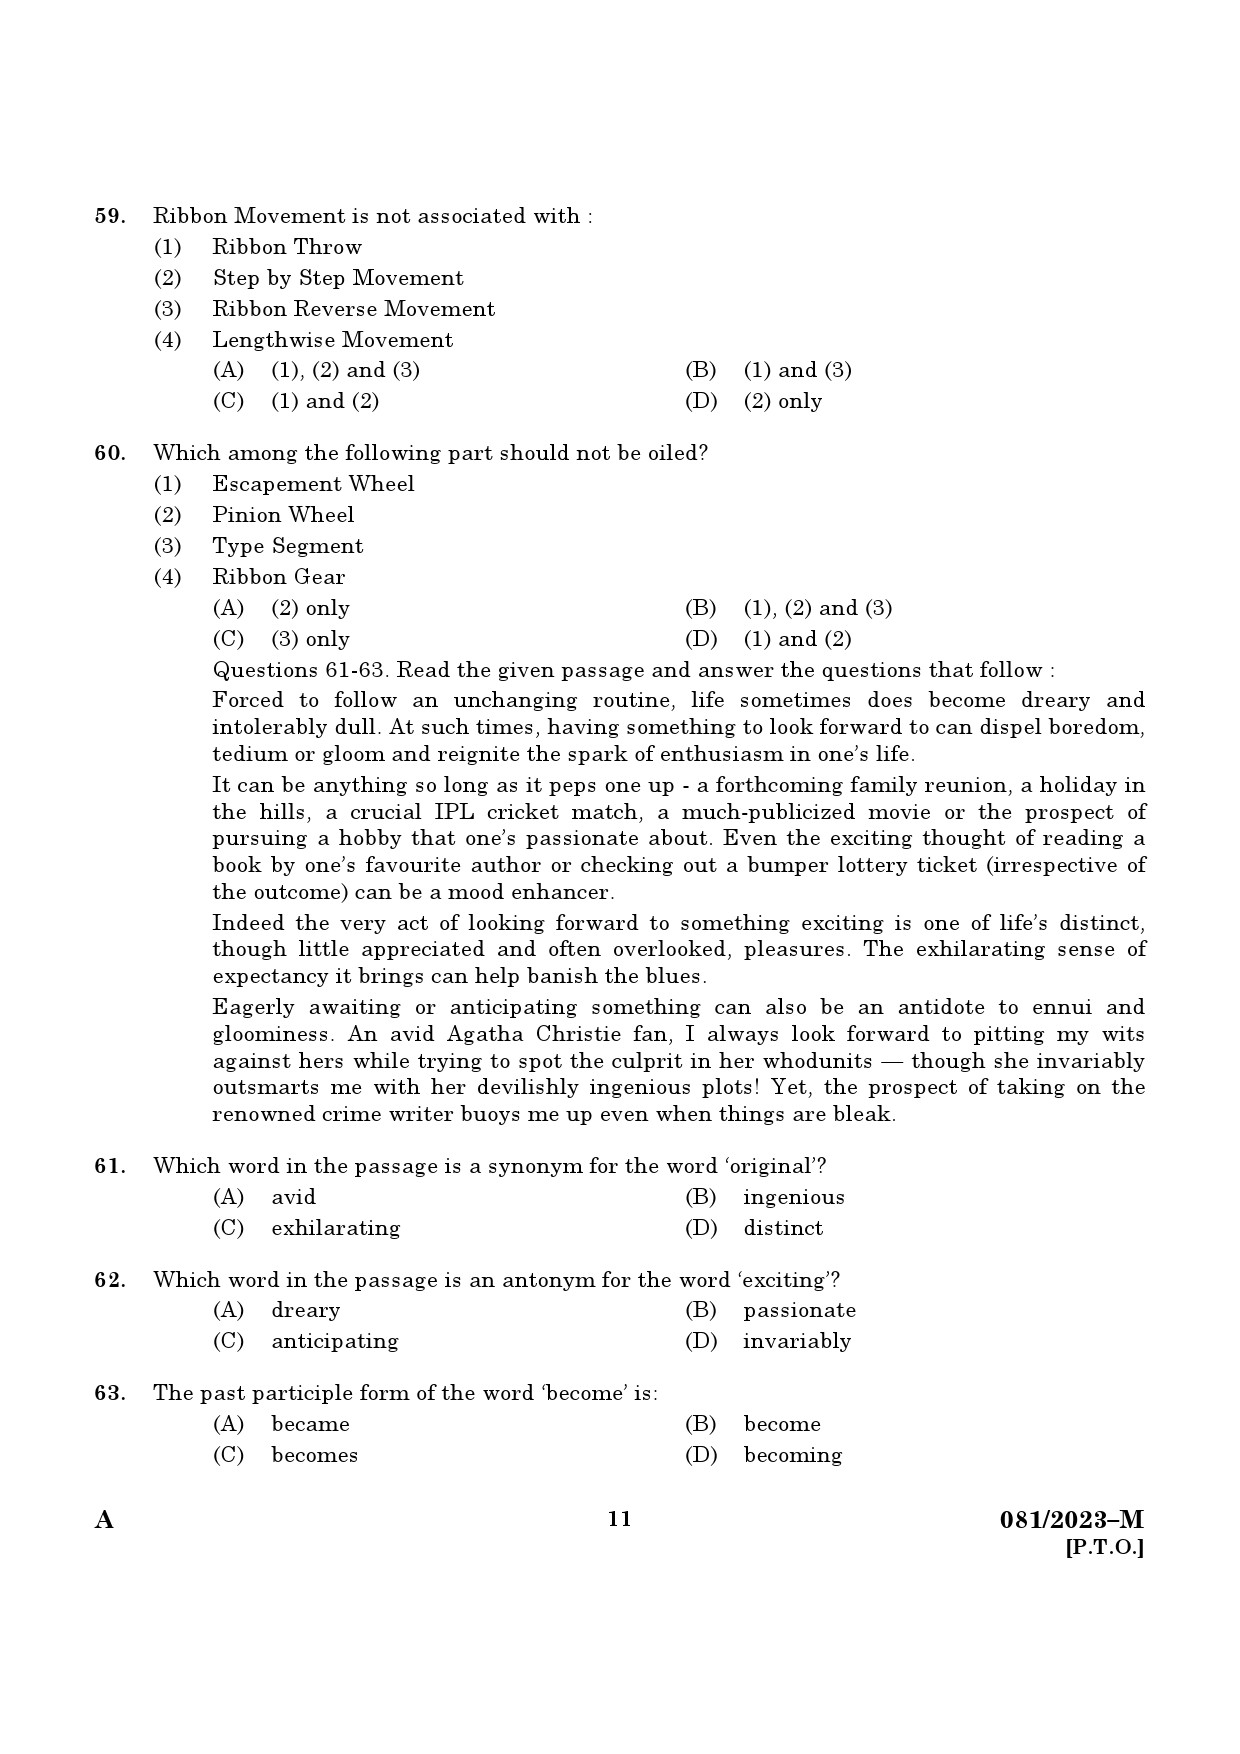 KPSC Clerk and Typist Degree Level Main Exam 2022 Malayalam 2023 Code 0812023 M 9